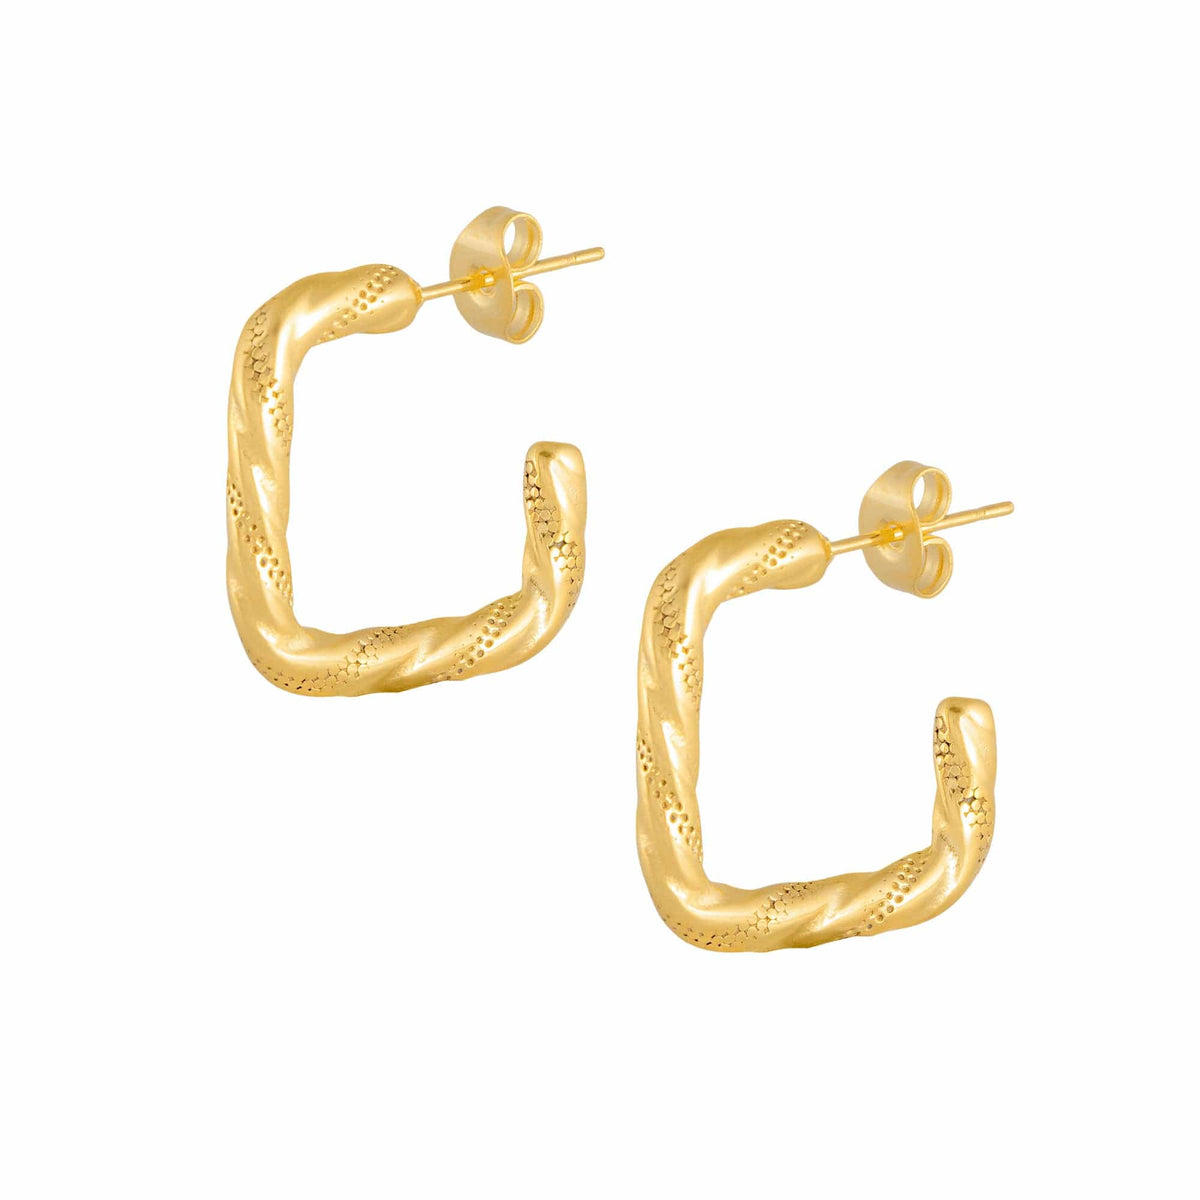 BOHOMOON Stainless Steel Nalini Hoop Earrings Gold